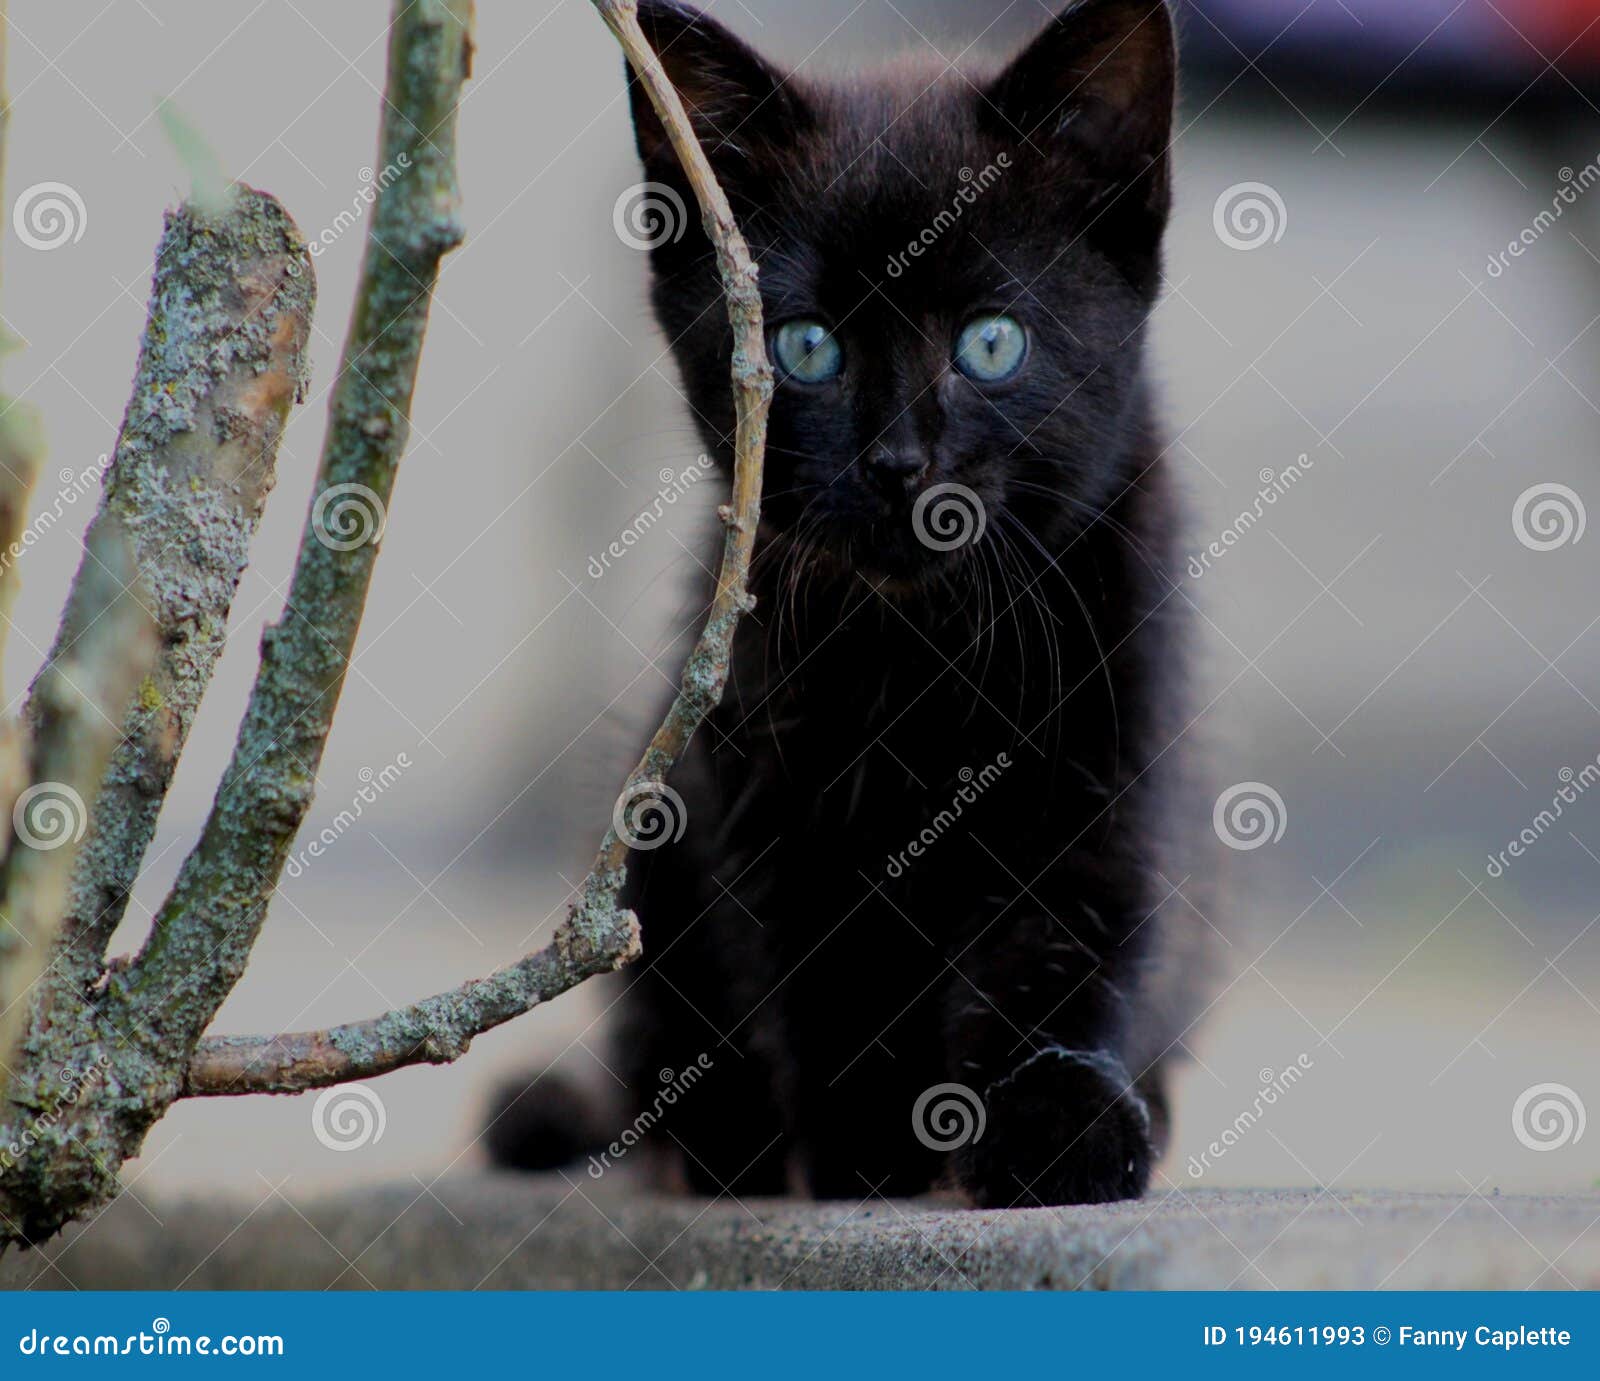 une petite chatte noir avec les yeux bleus